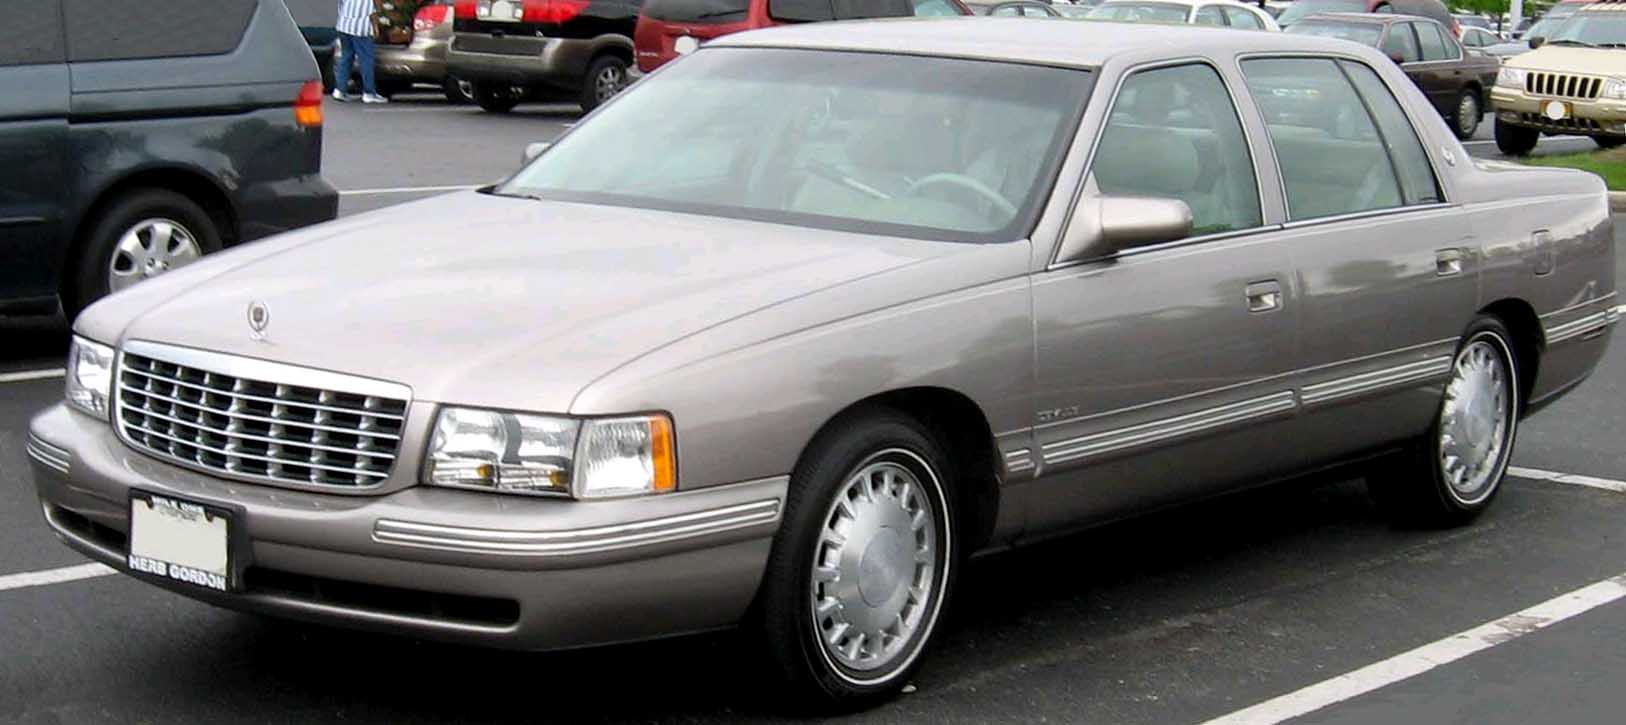 File:97-99 Cadillac DeVille.jpg - Wikipedia